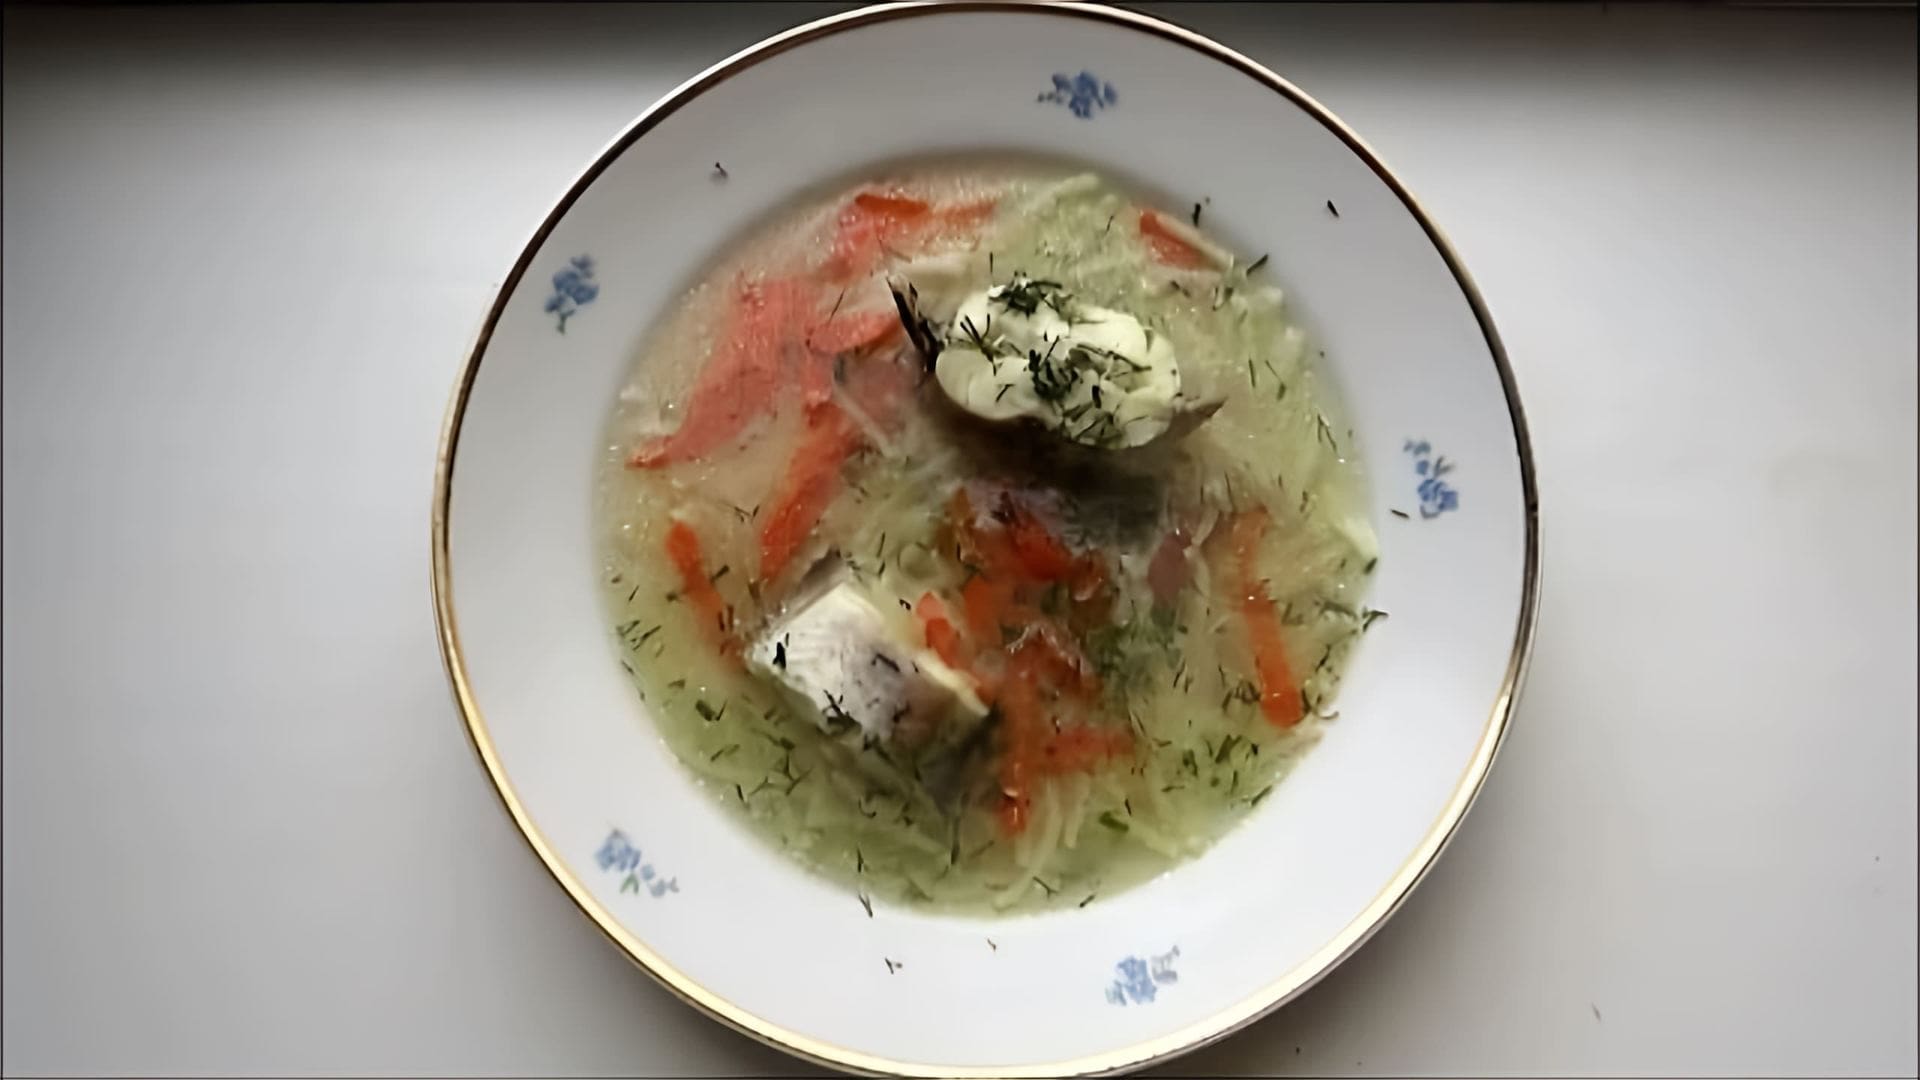 В этом видео демонстрируется процесс приготовления вермишелевого супа из минтая